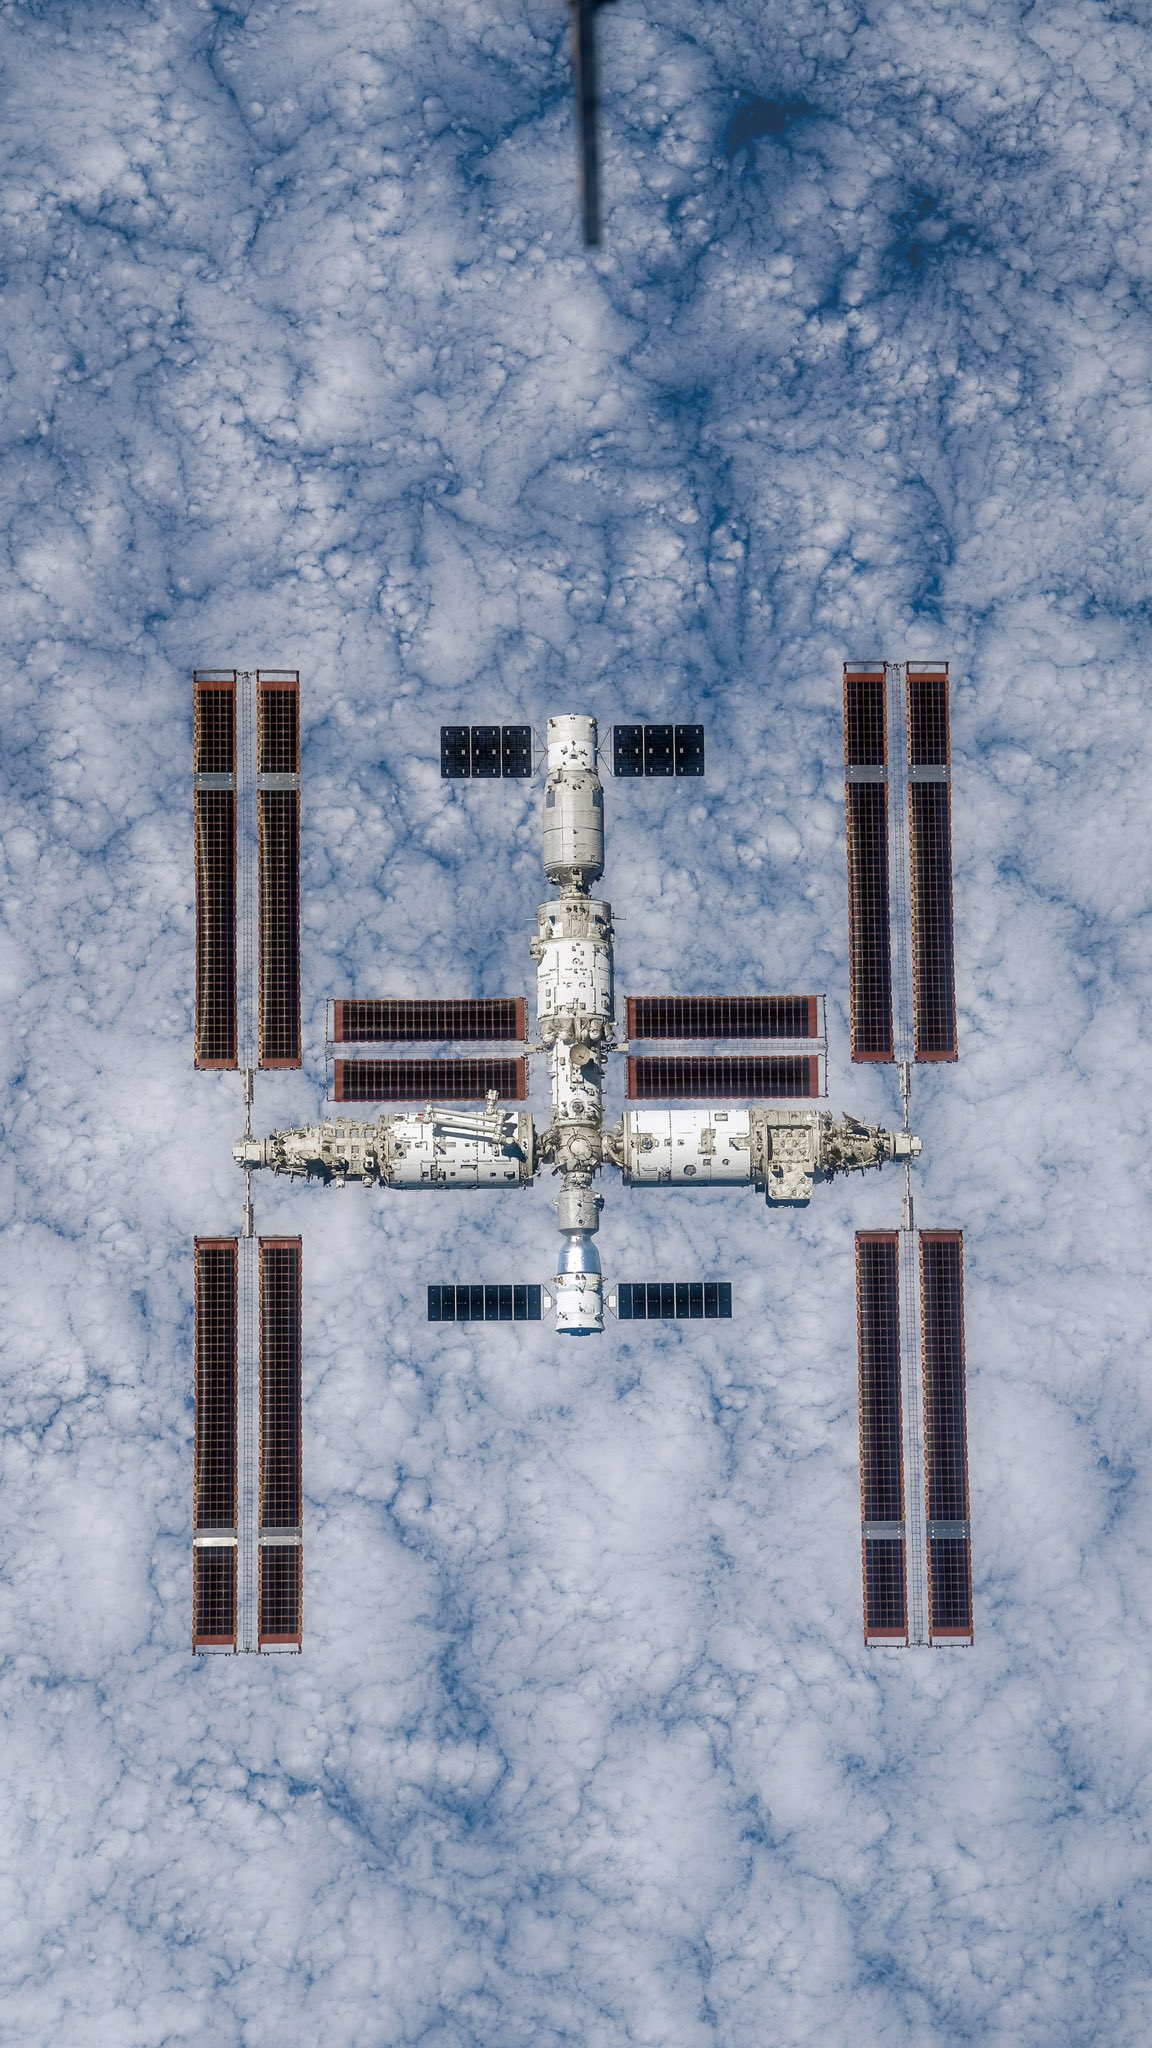 Archivo jpg con la fotografía en grande de la estación espacial China